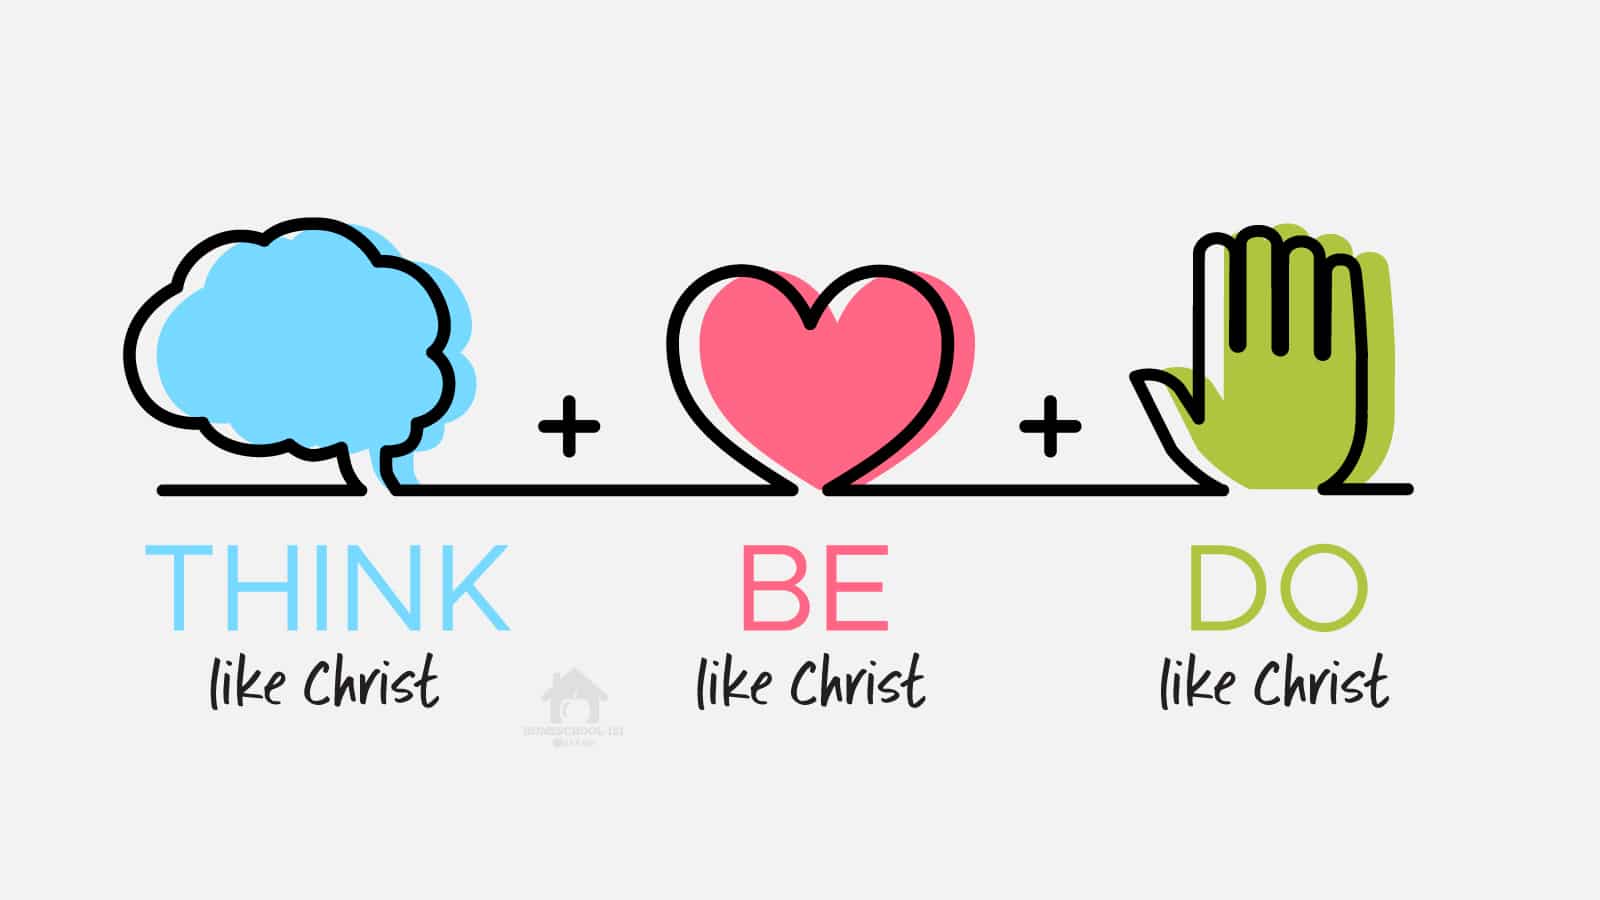 Think Like Christ, Be Like Christ, Do Like Christ